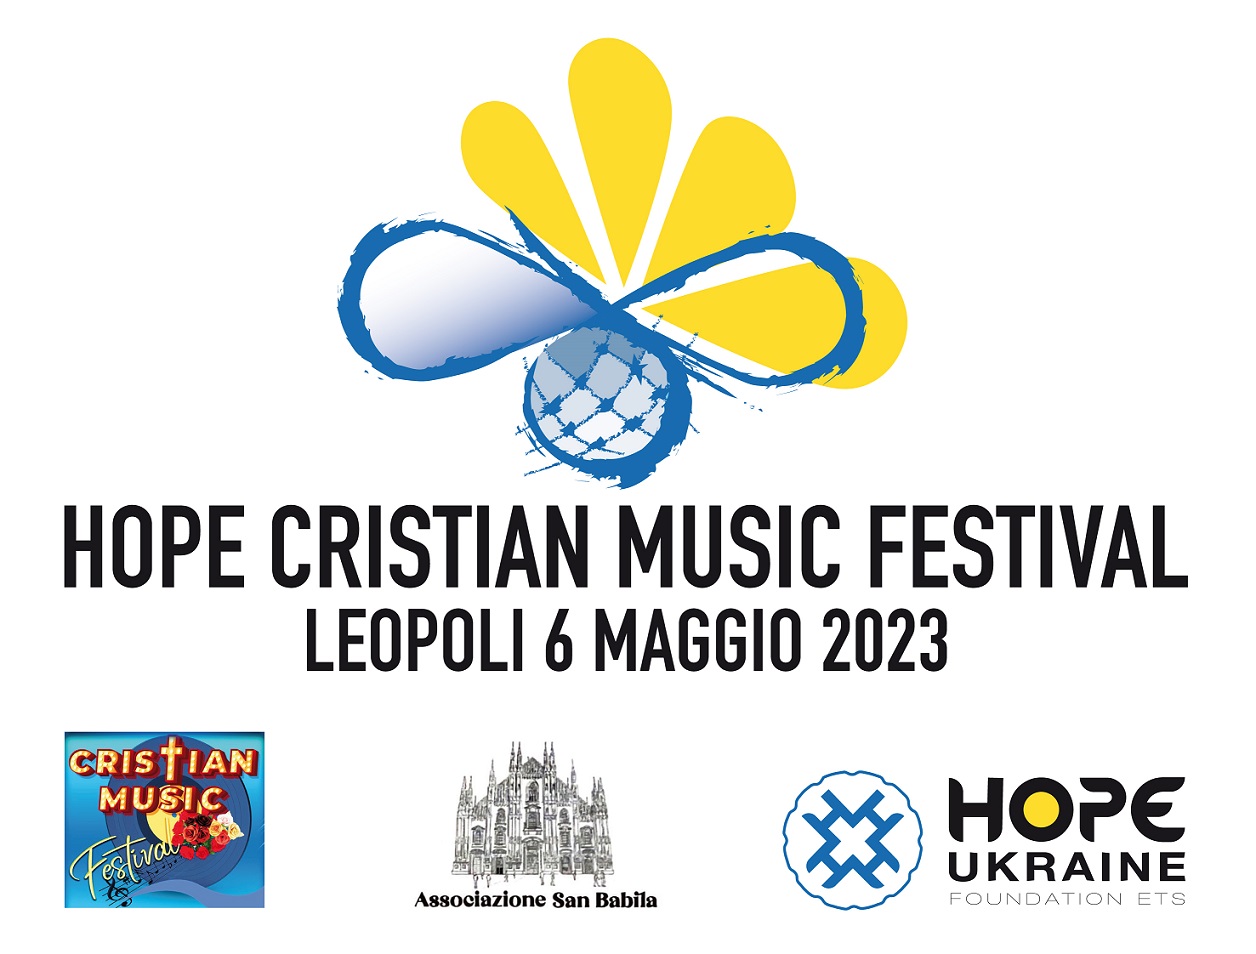 "Hope Cristian Music Festival"